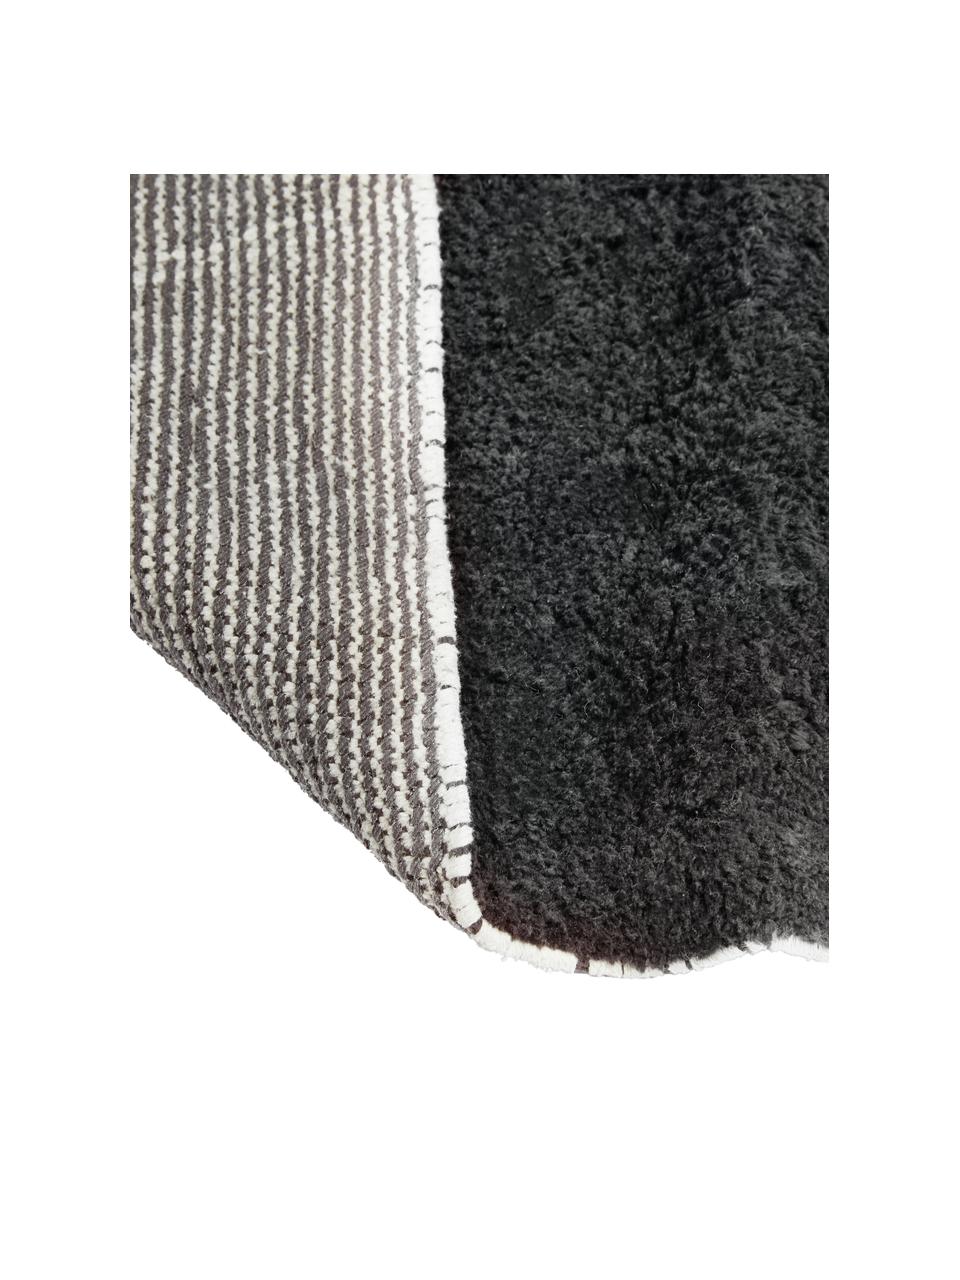 Ručně tkaný bavlněný koberec s klikatým vzorem a třásněmi Asisa, Antracitová, Š 200 cm, D 300 cm (velikost L)